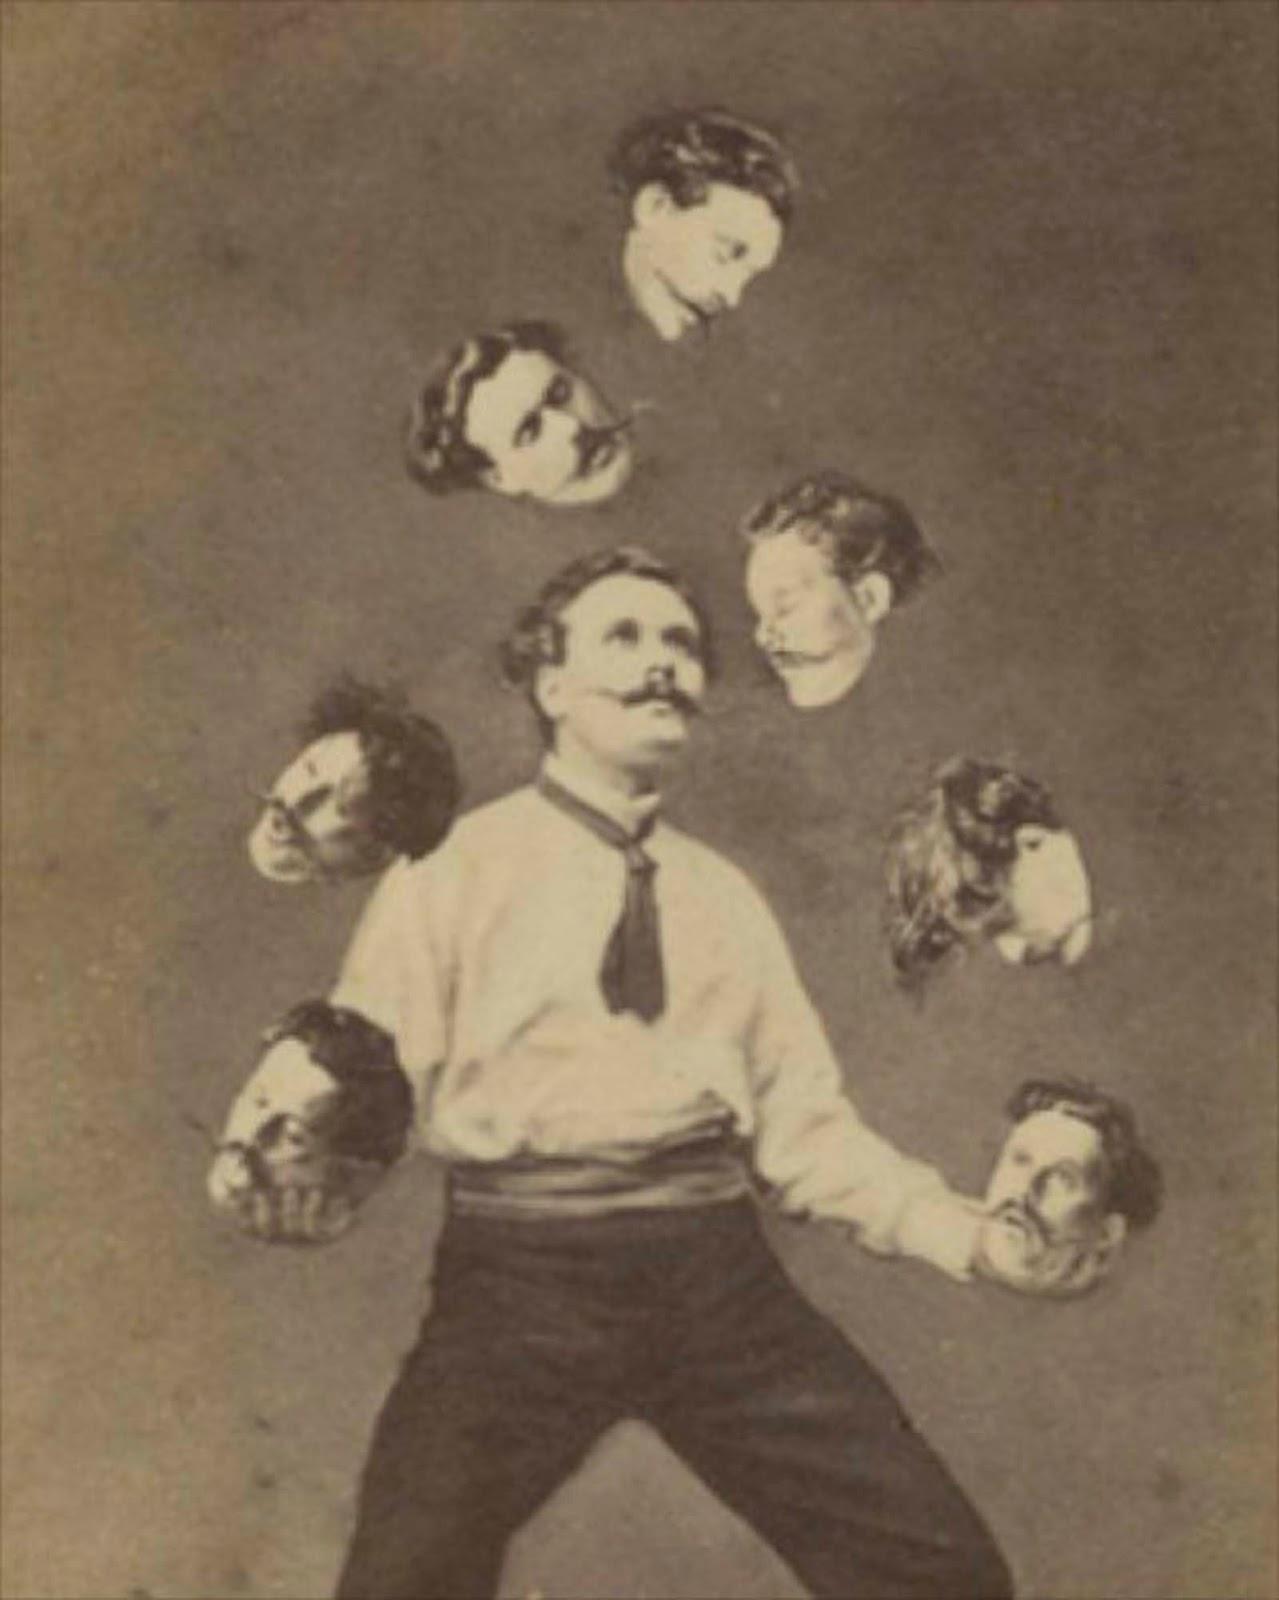 Comment les gens manipulés photos avant Photoshop, 1850-1950